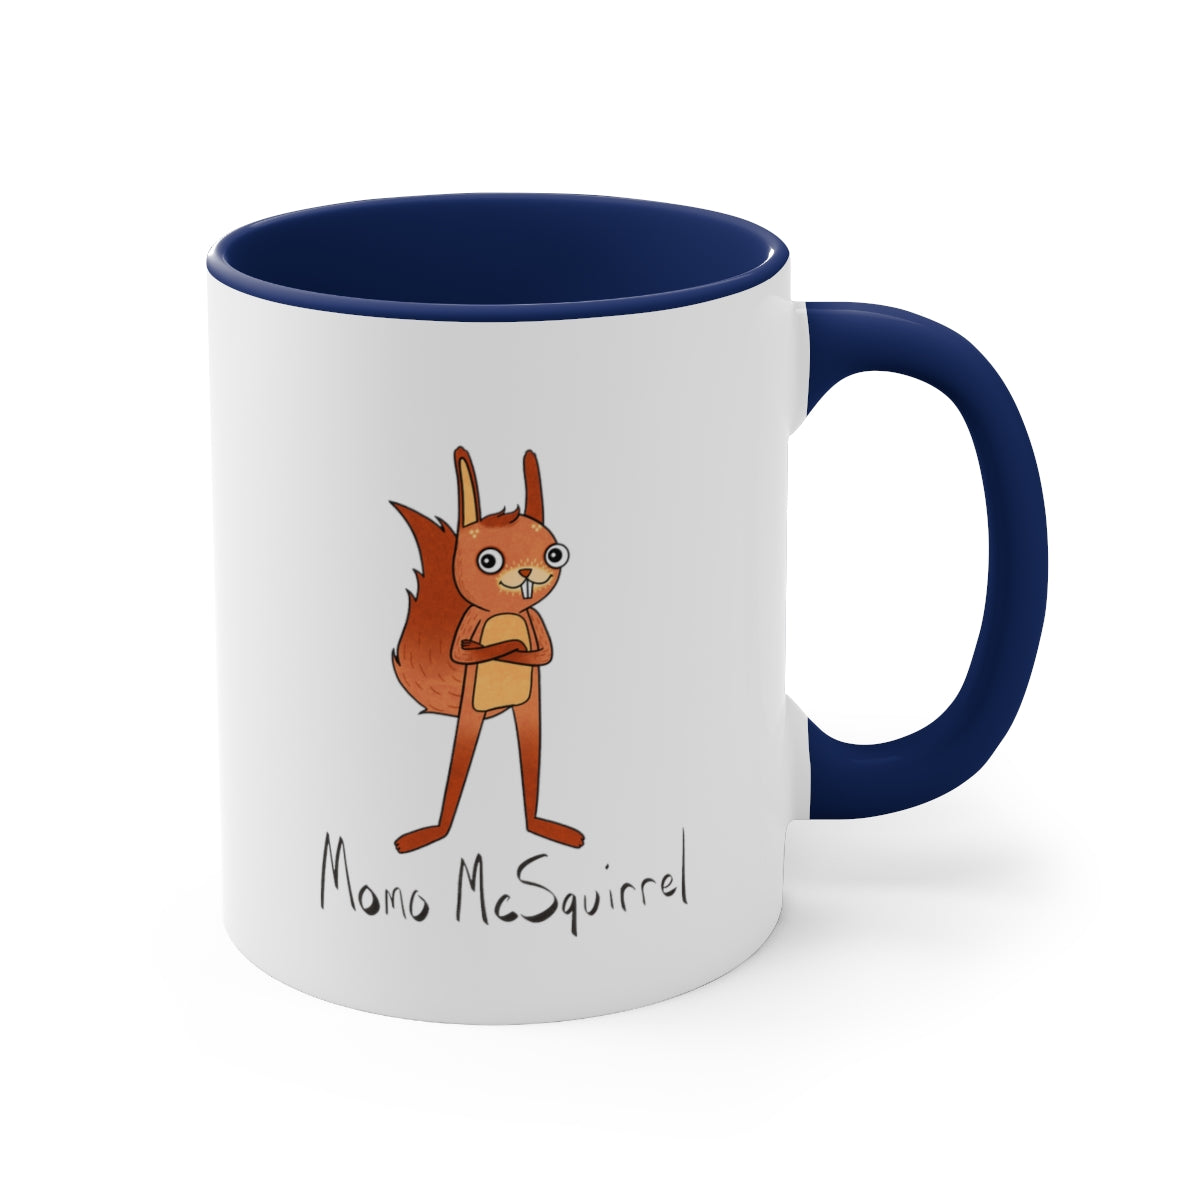 Momo McSquirrel Cozy Mug